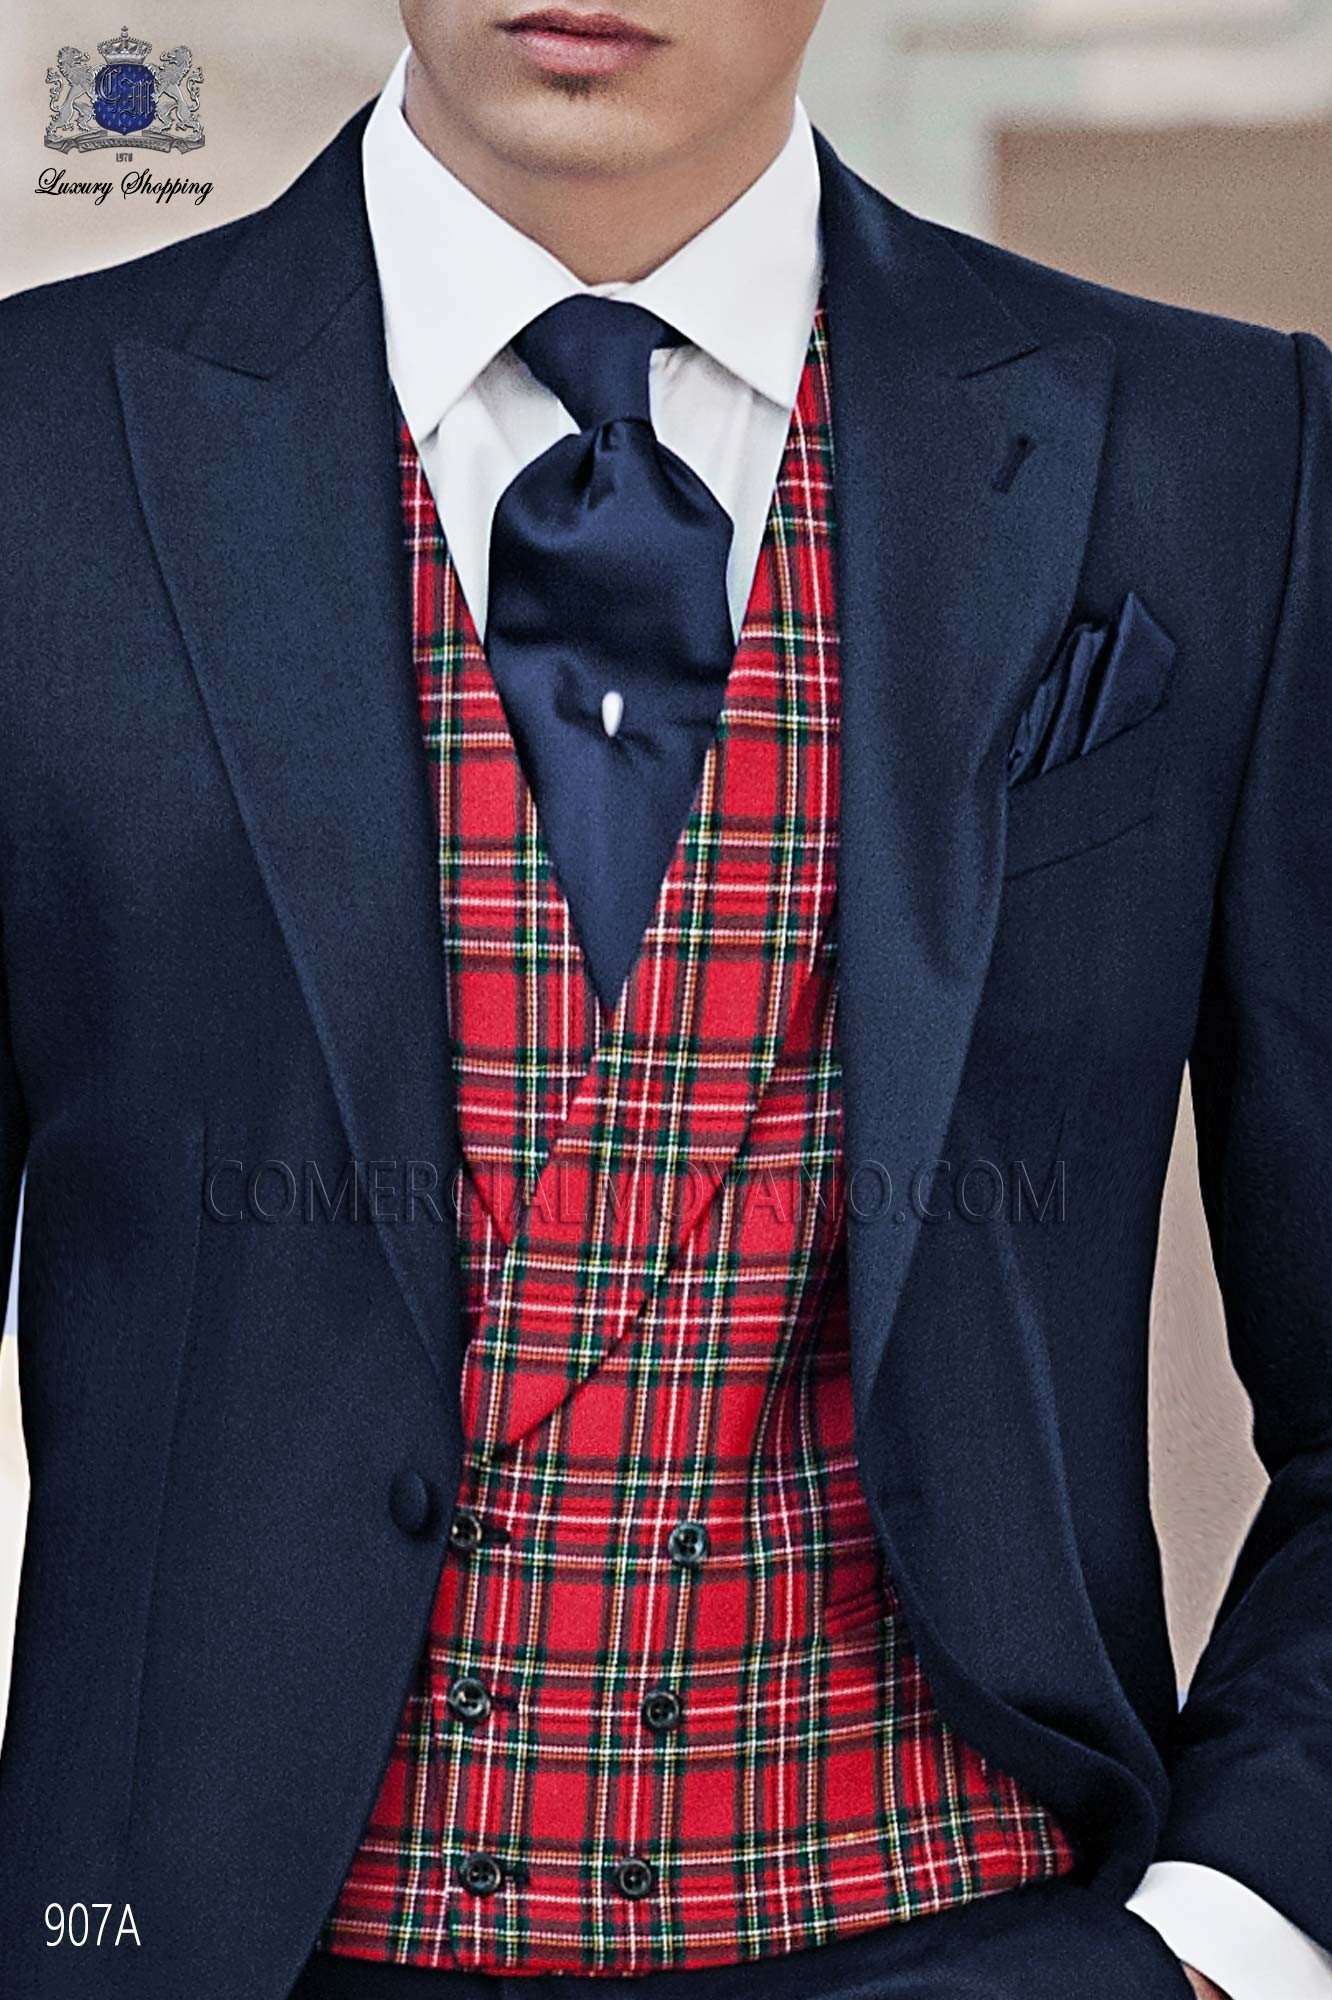 Italian gentleman blue men wedding suit, model: 907A Mario Moyano Gentleman Collection